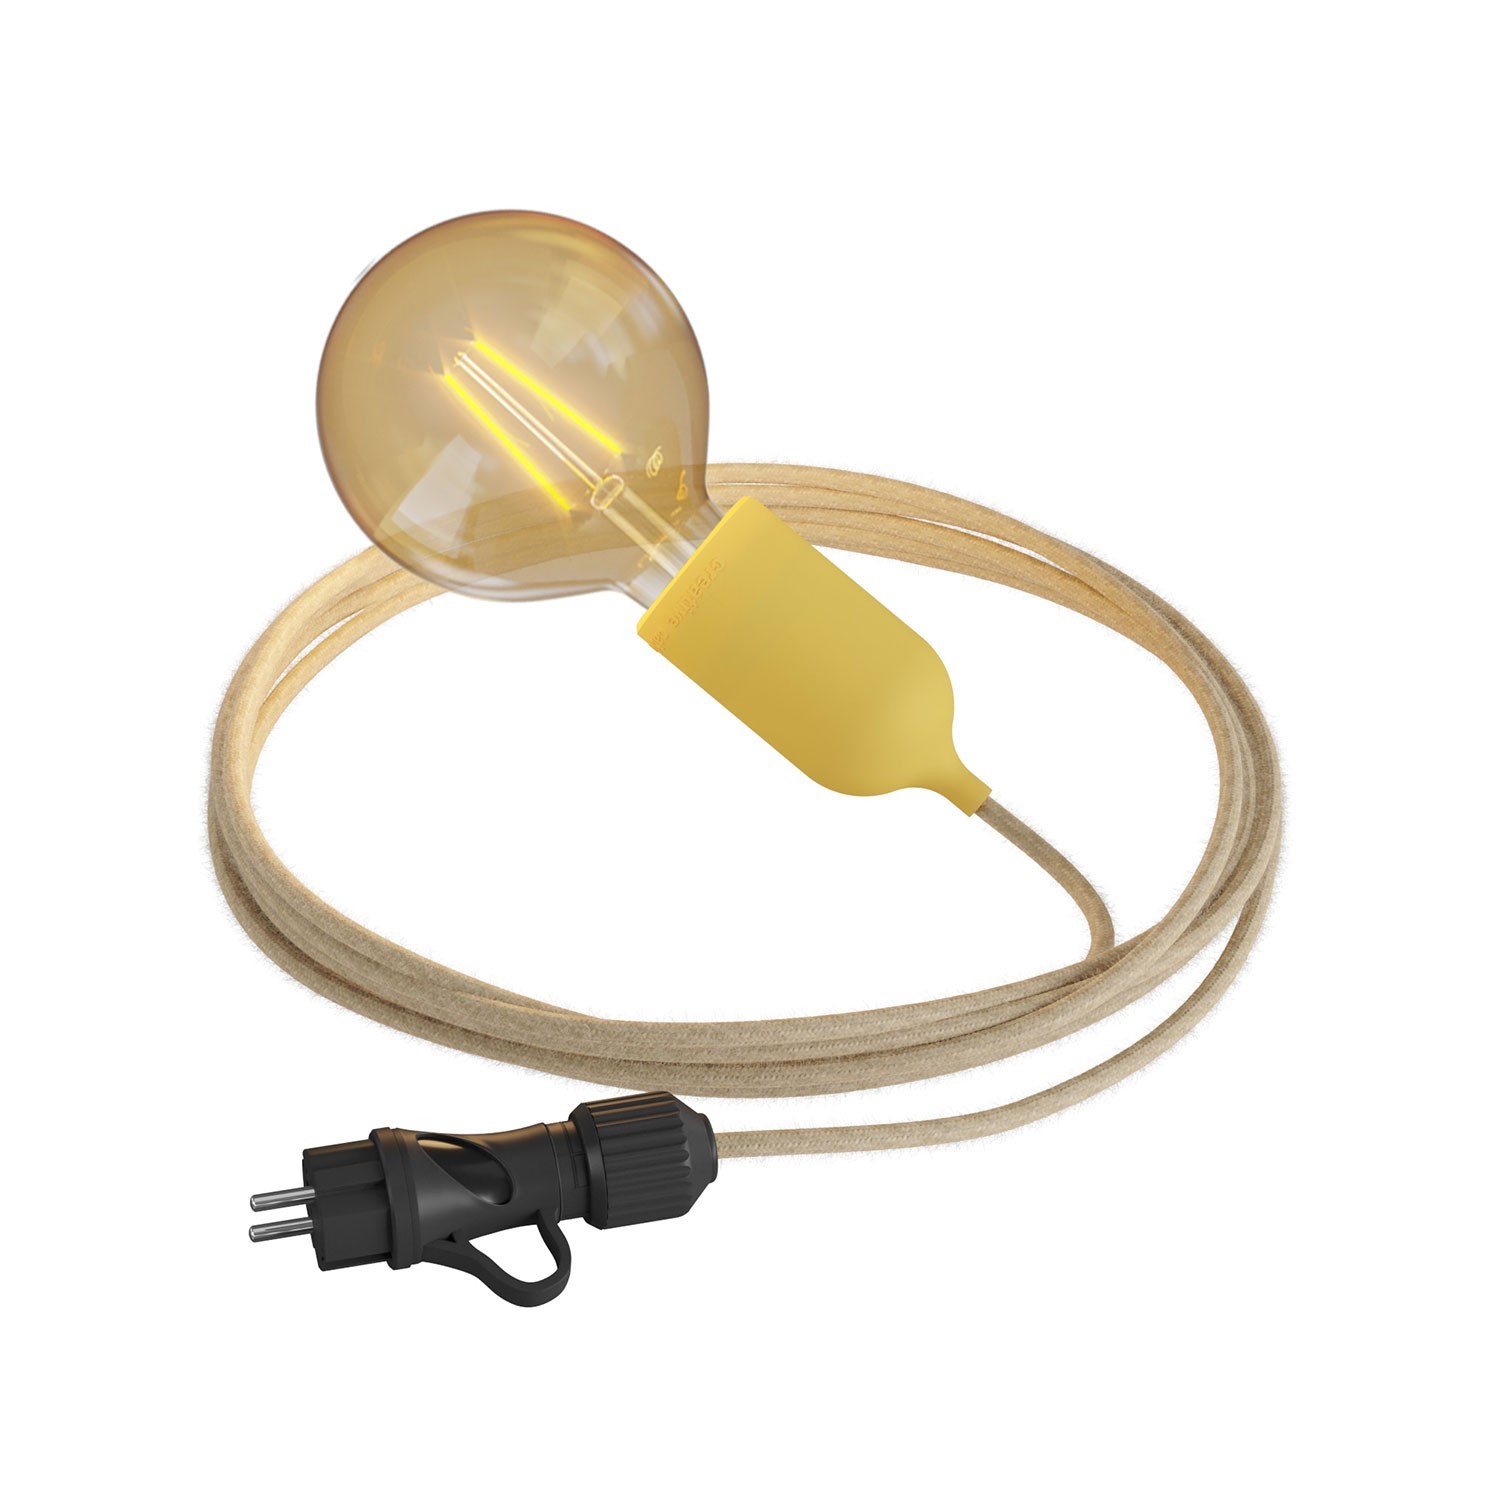 Snake Eiva Pastel, lampe d'extérieur portative, 5 m de câble textile, douille étanche IP65 et fiche